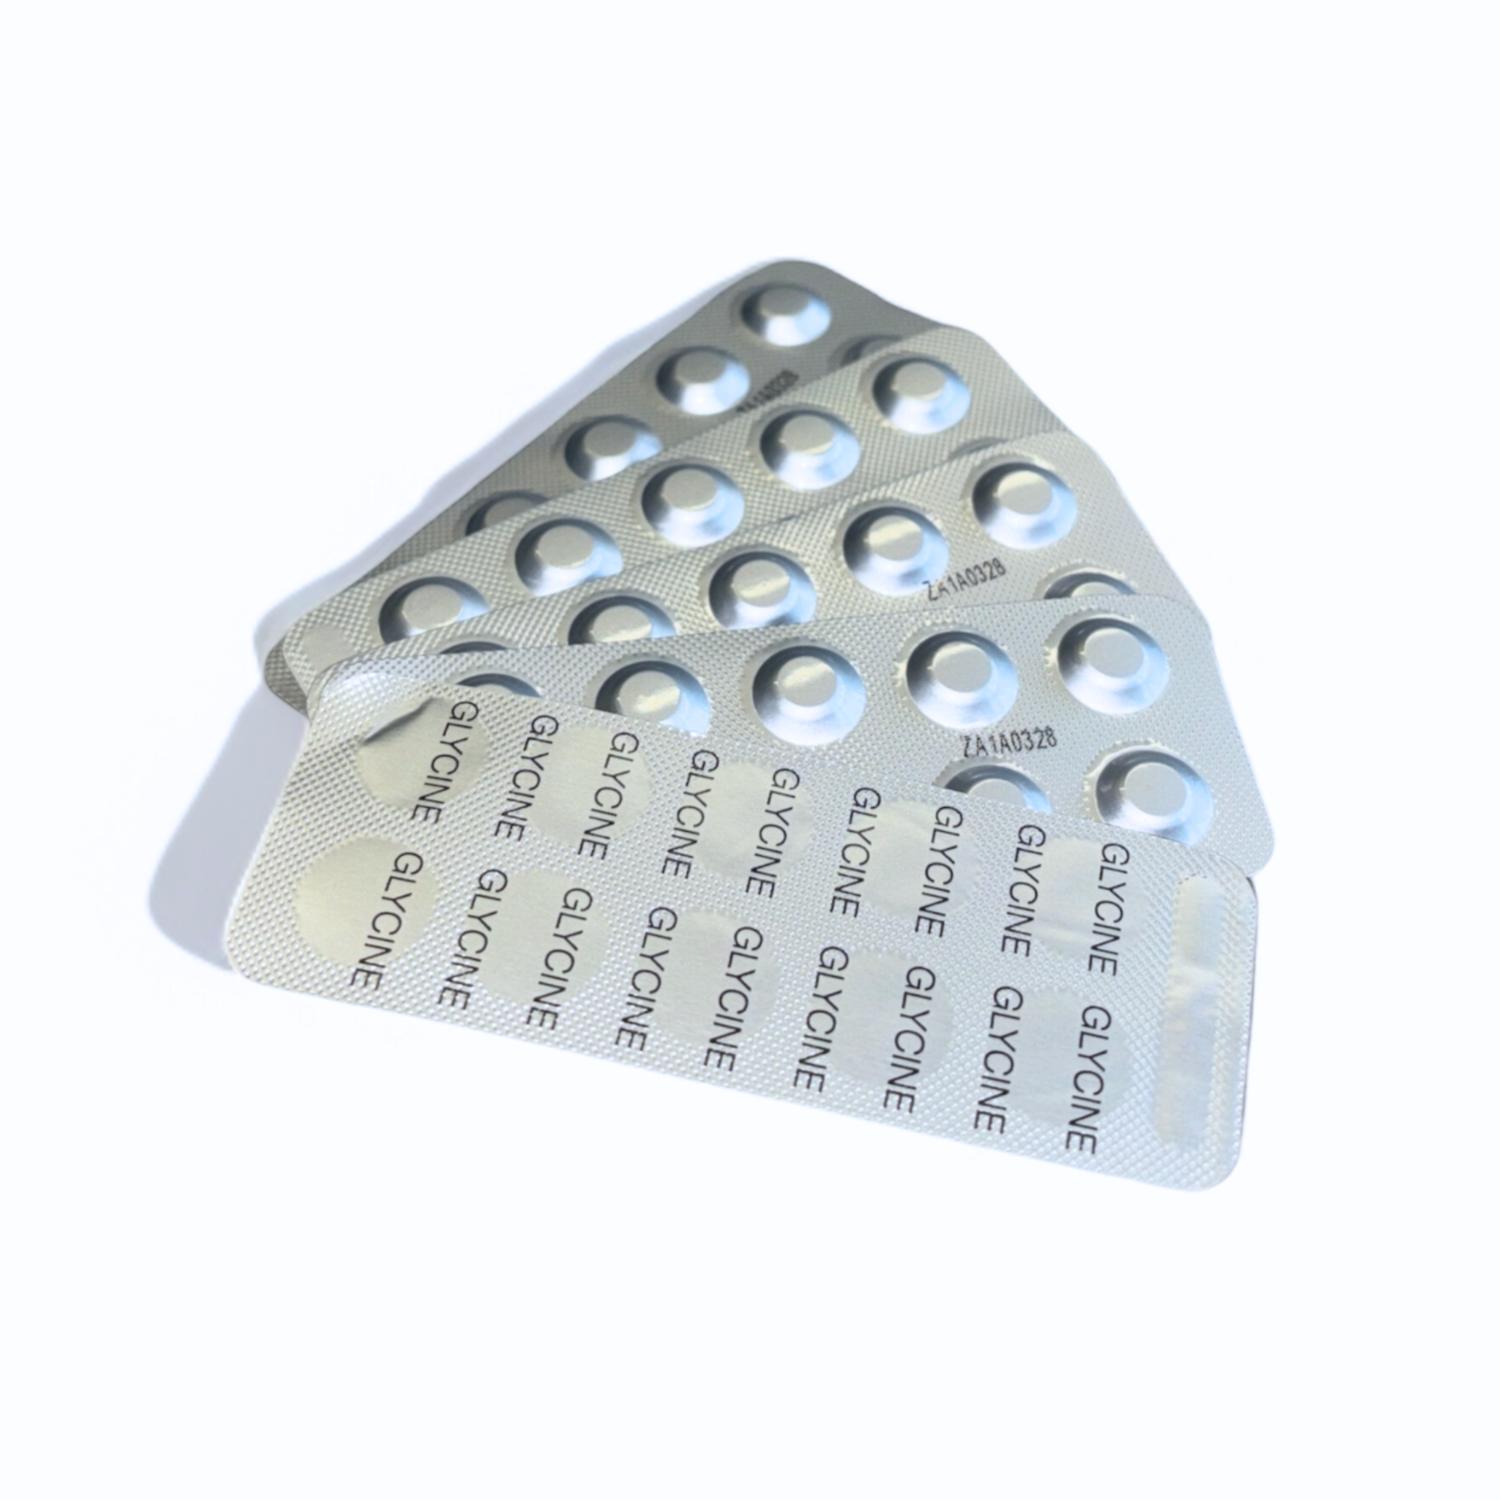 DPD-Glyzin-Tabletten Analytic S